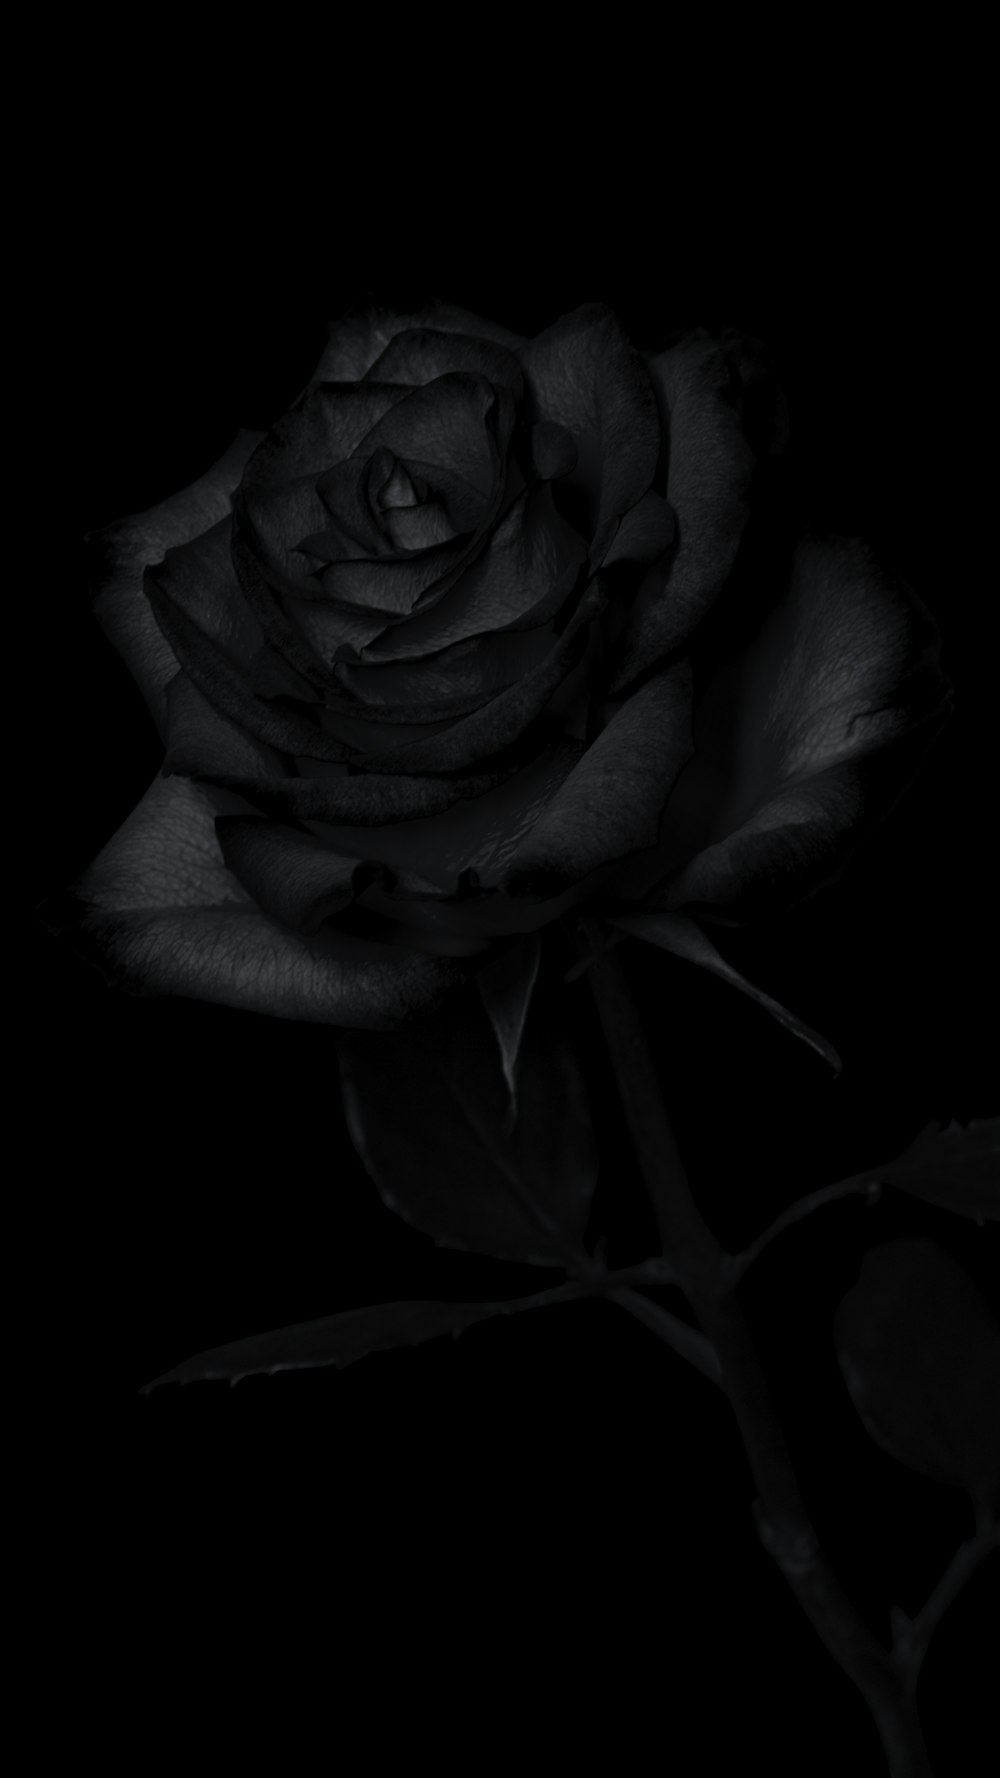 Más de 550 imágenes de rosas oscuras | Descargar imágenes gratis en Unsplash